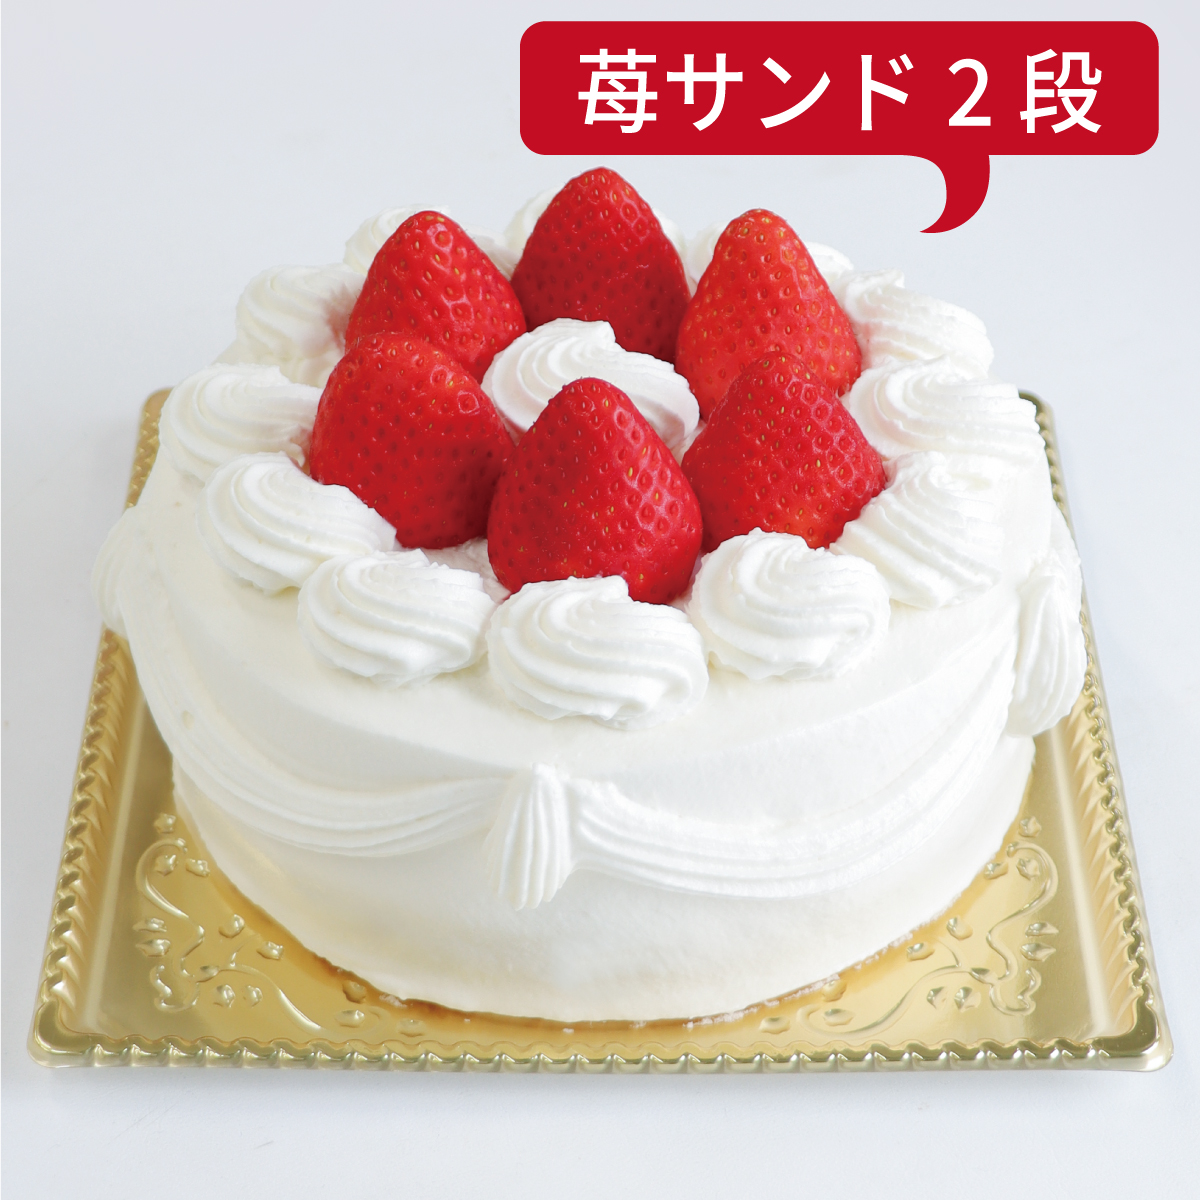 【ダブル】いちごデコレーションケーキ<18cm>